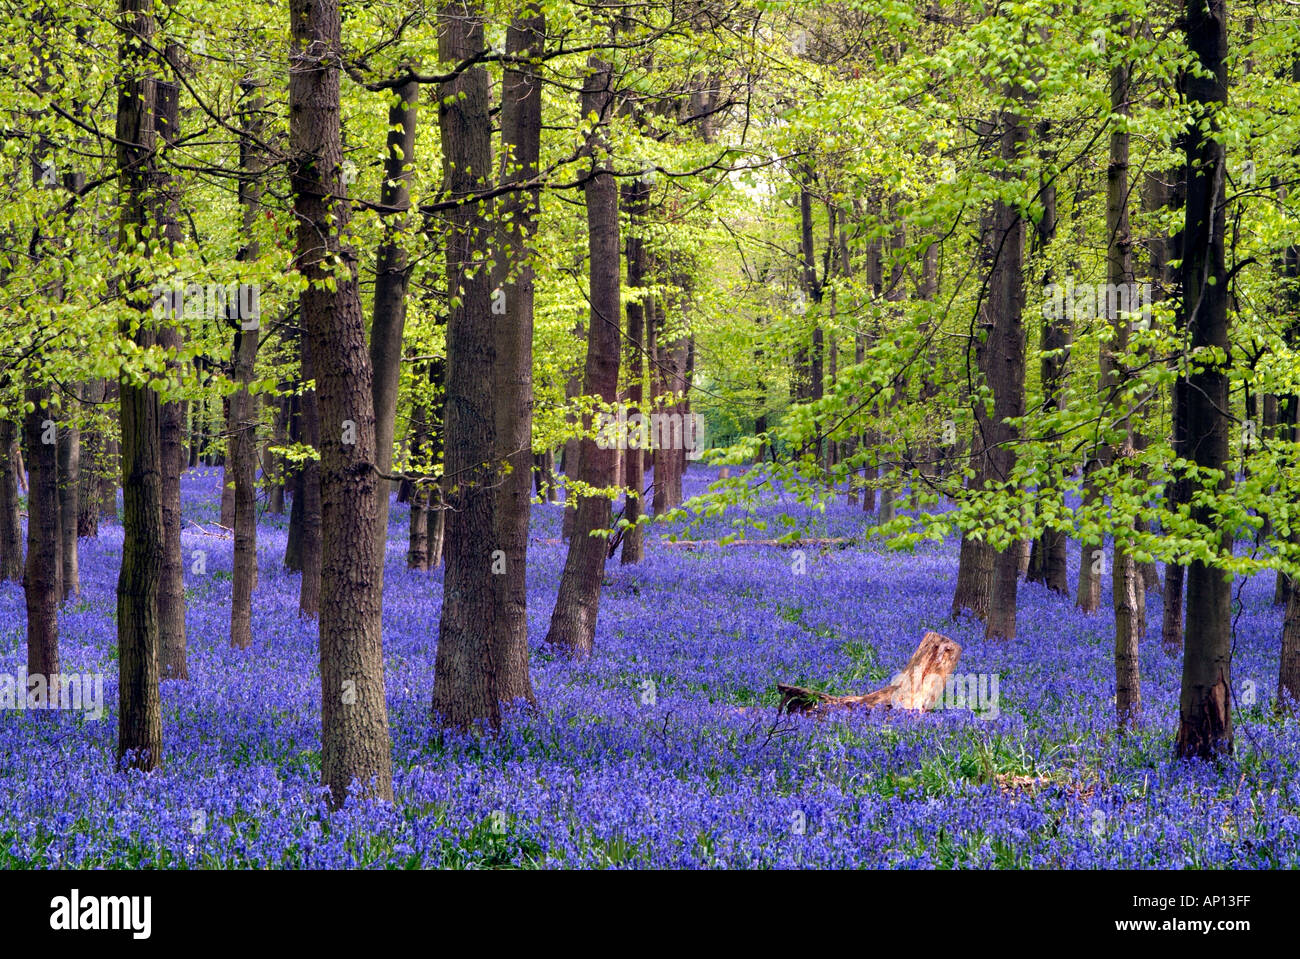 Bluebells in legno di faggio vivid blu e verde con il ceppo di albero per il contrasto Foto Stock